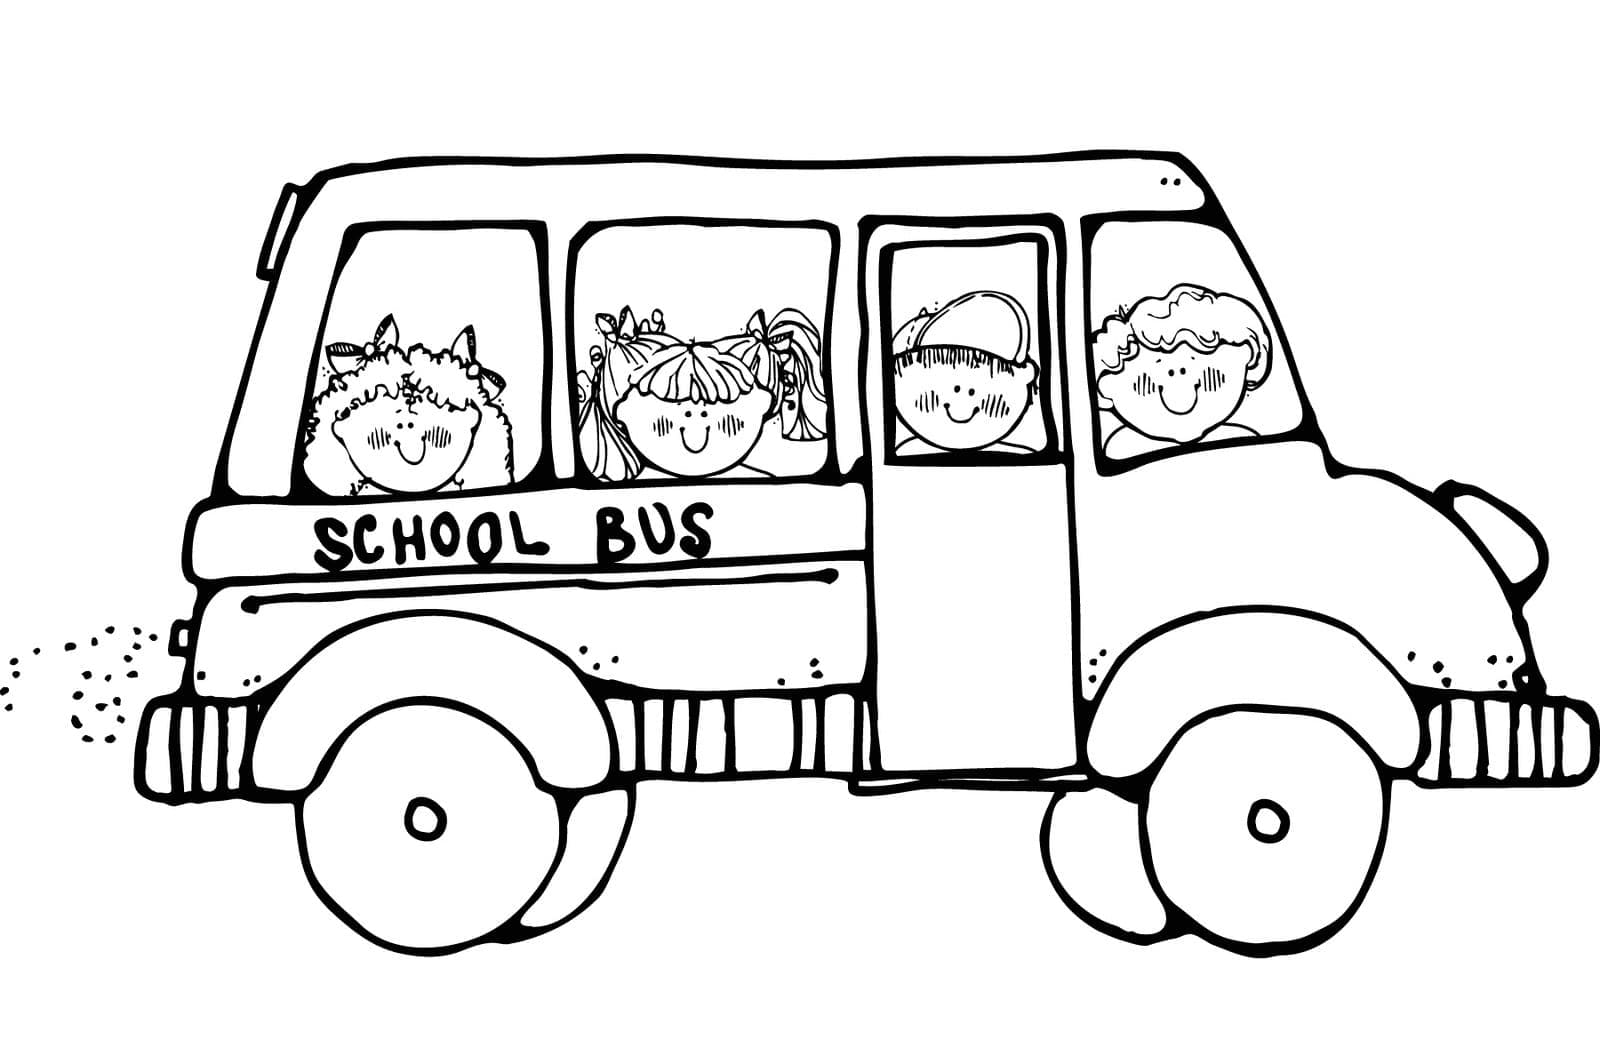 Malé děti ve školním autobuse omalovánka